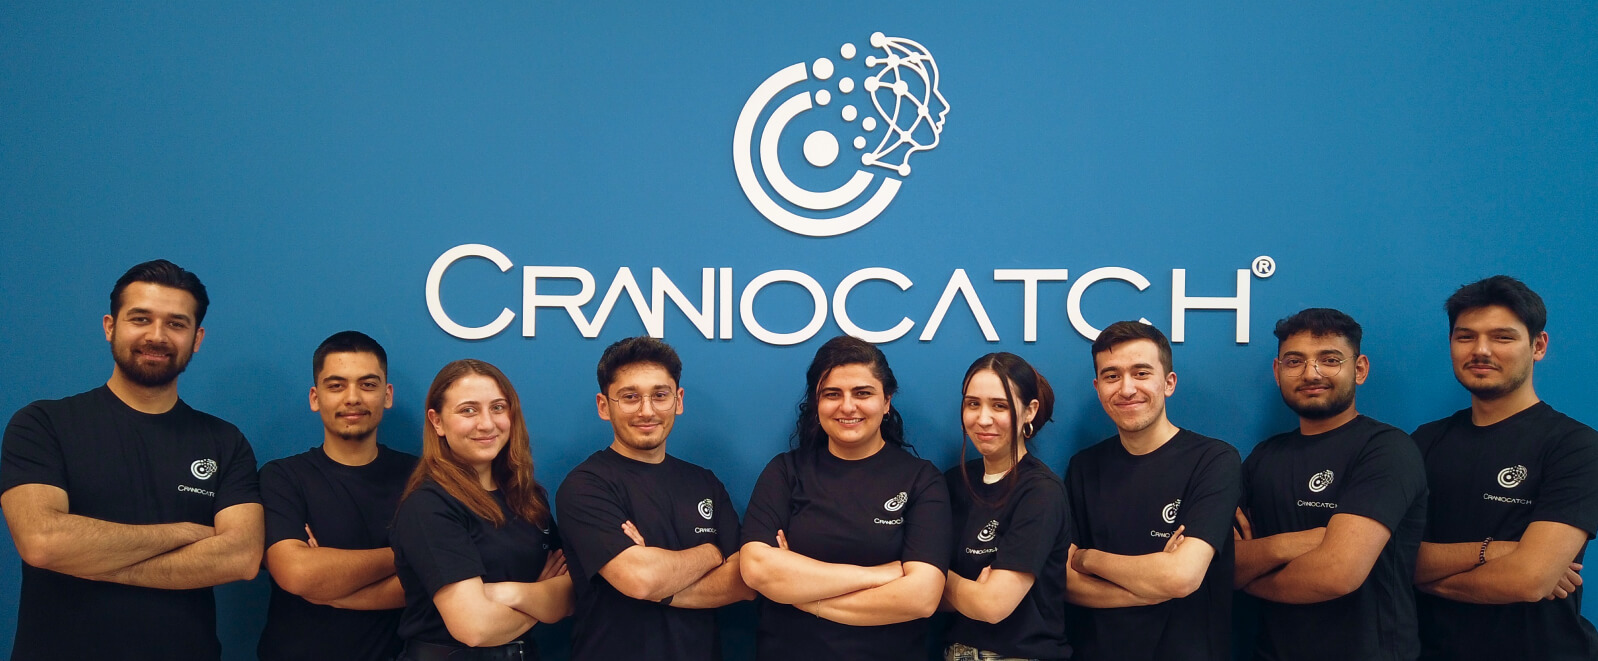 Team Craniocatch